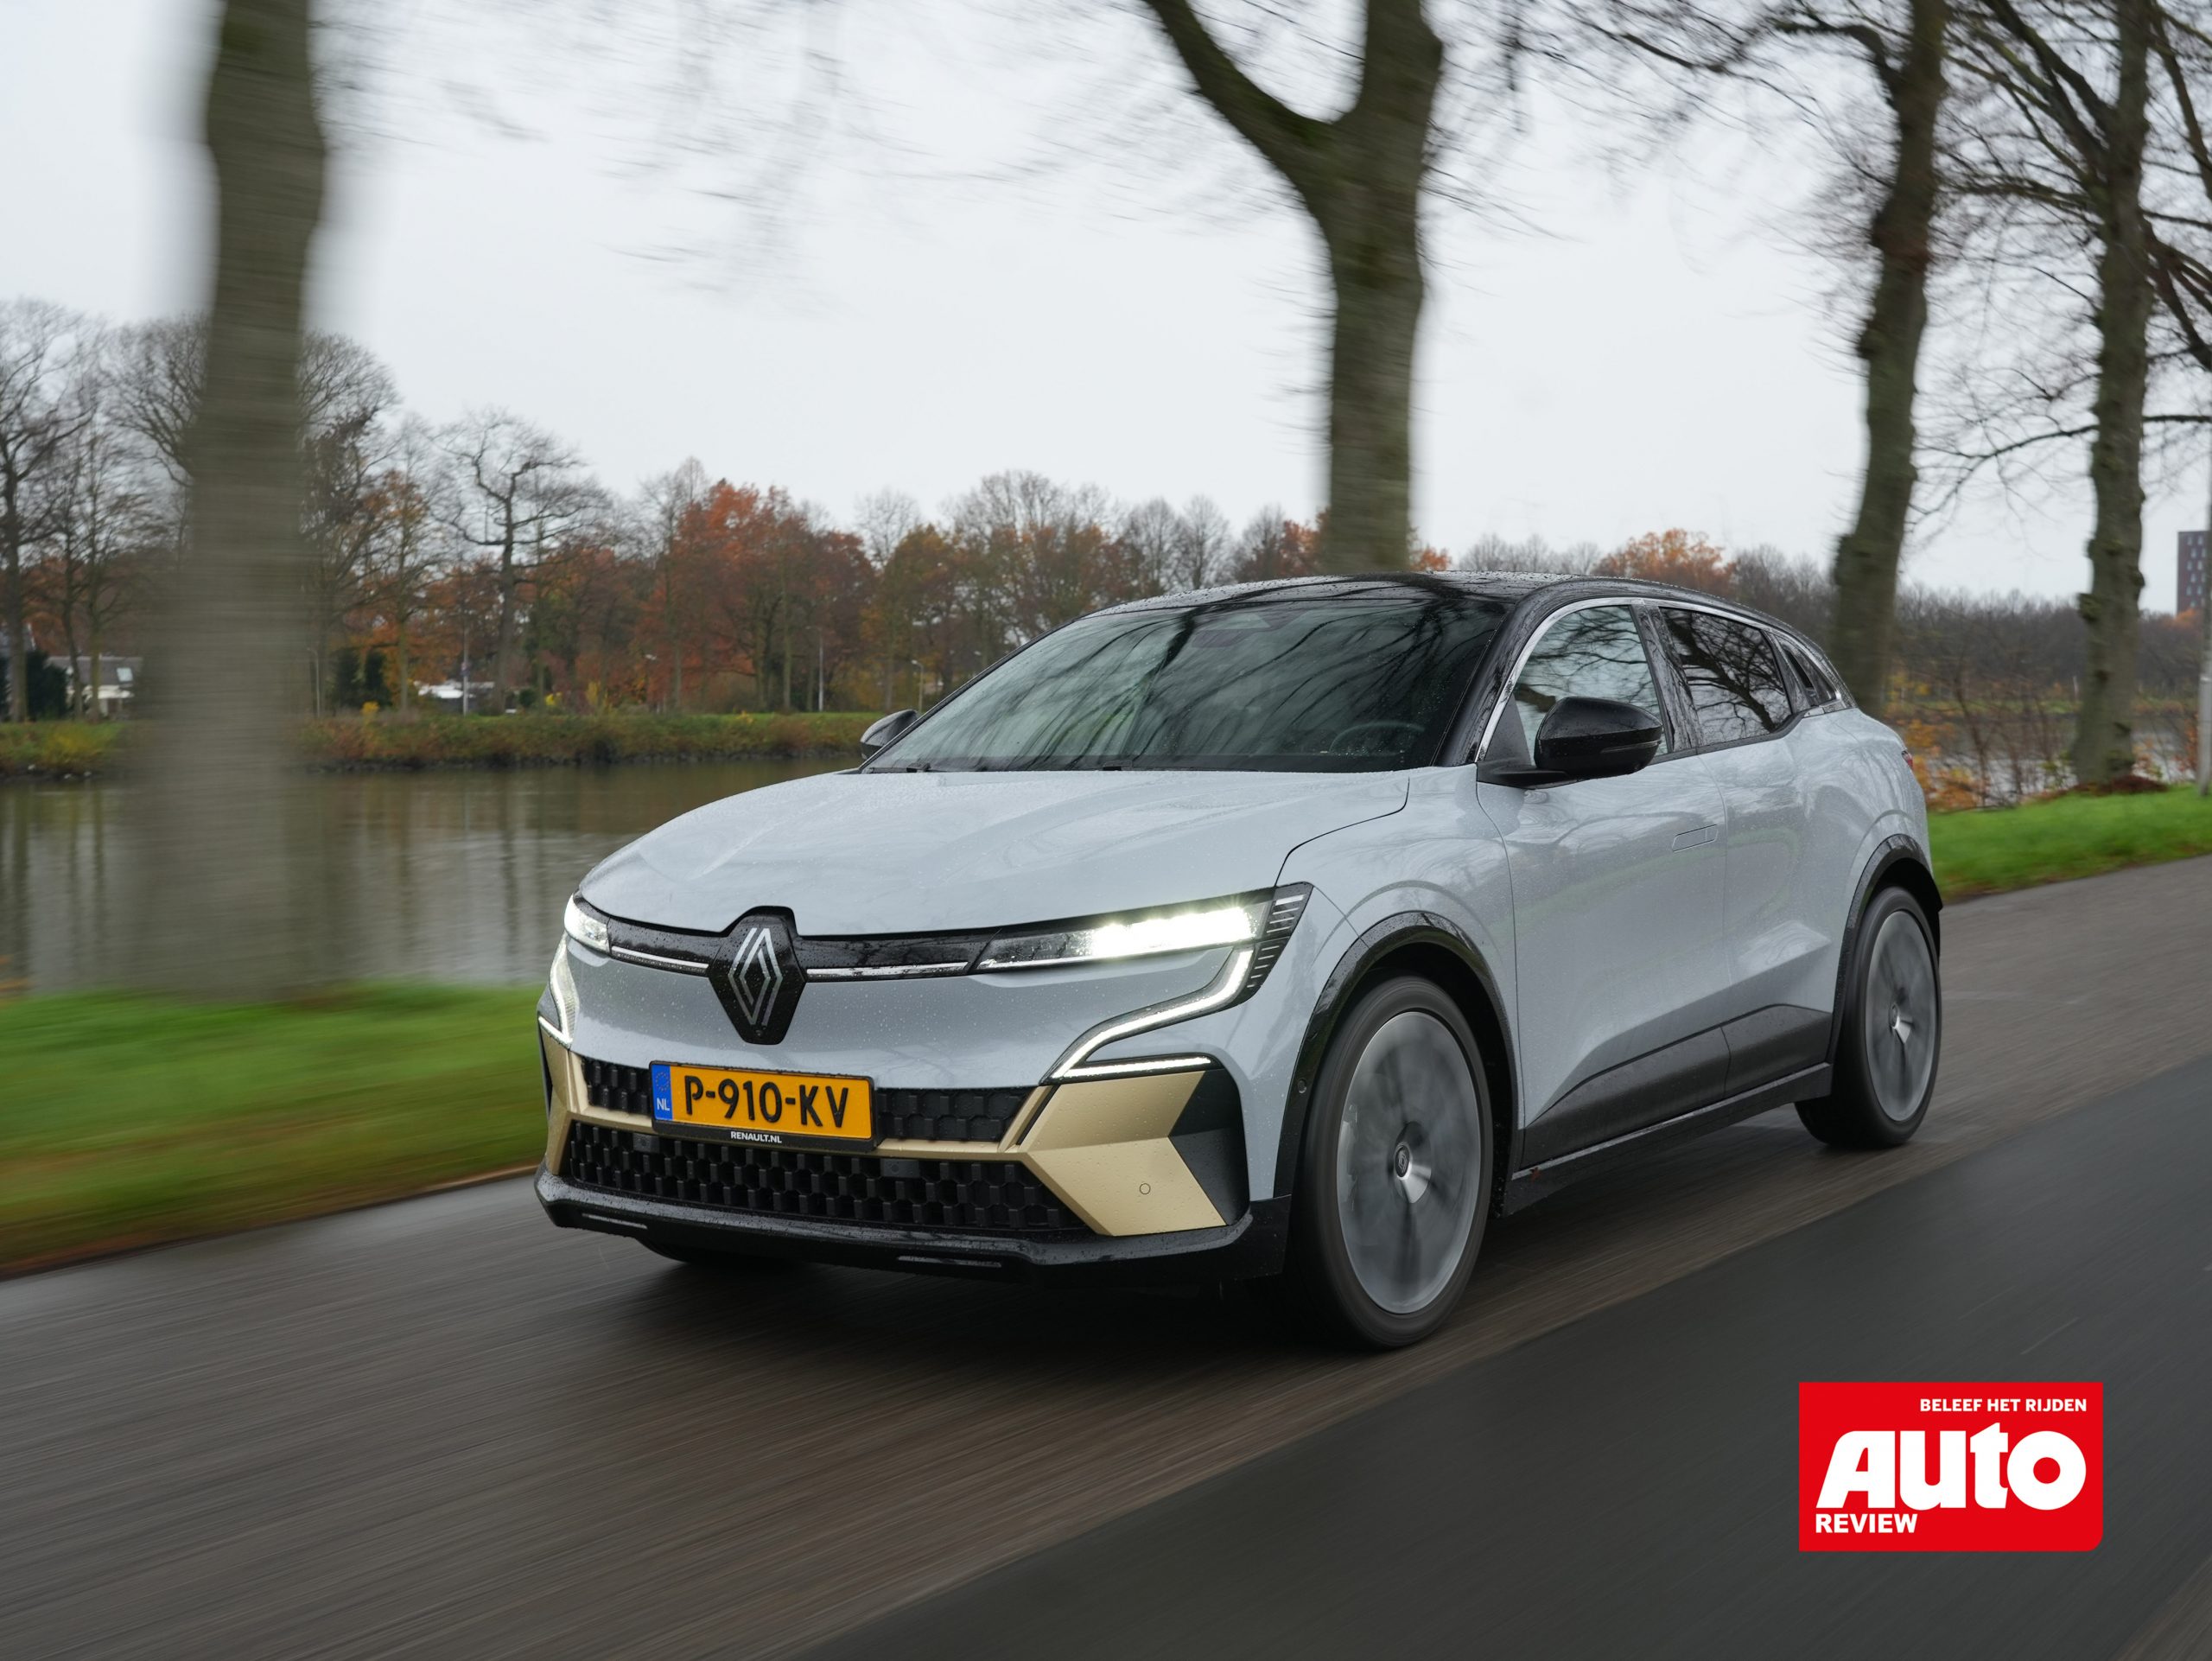 Renault E-Tech electric uitgeroepen tot Review Auto van het Jaar'